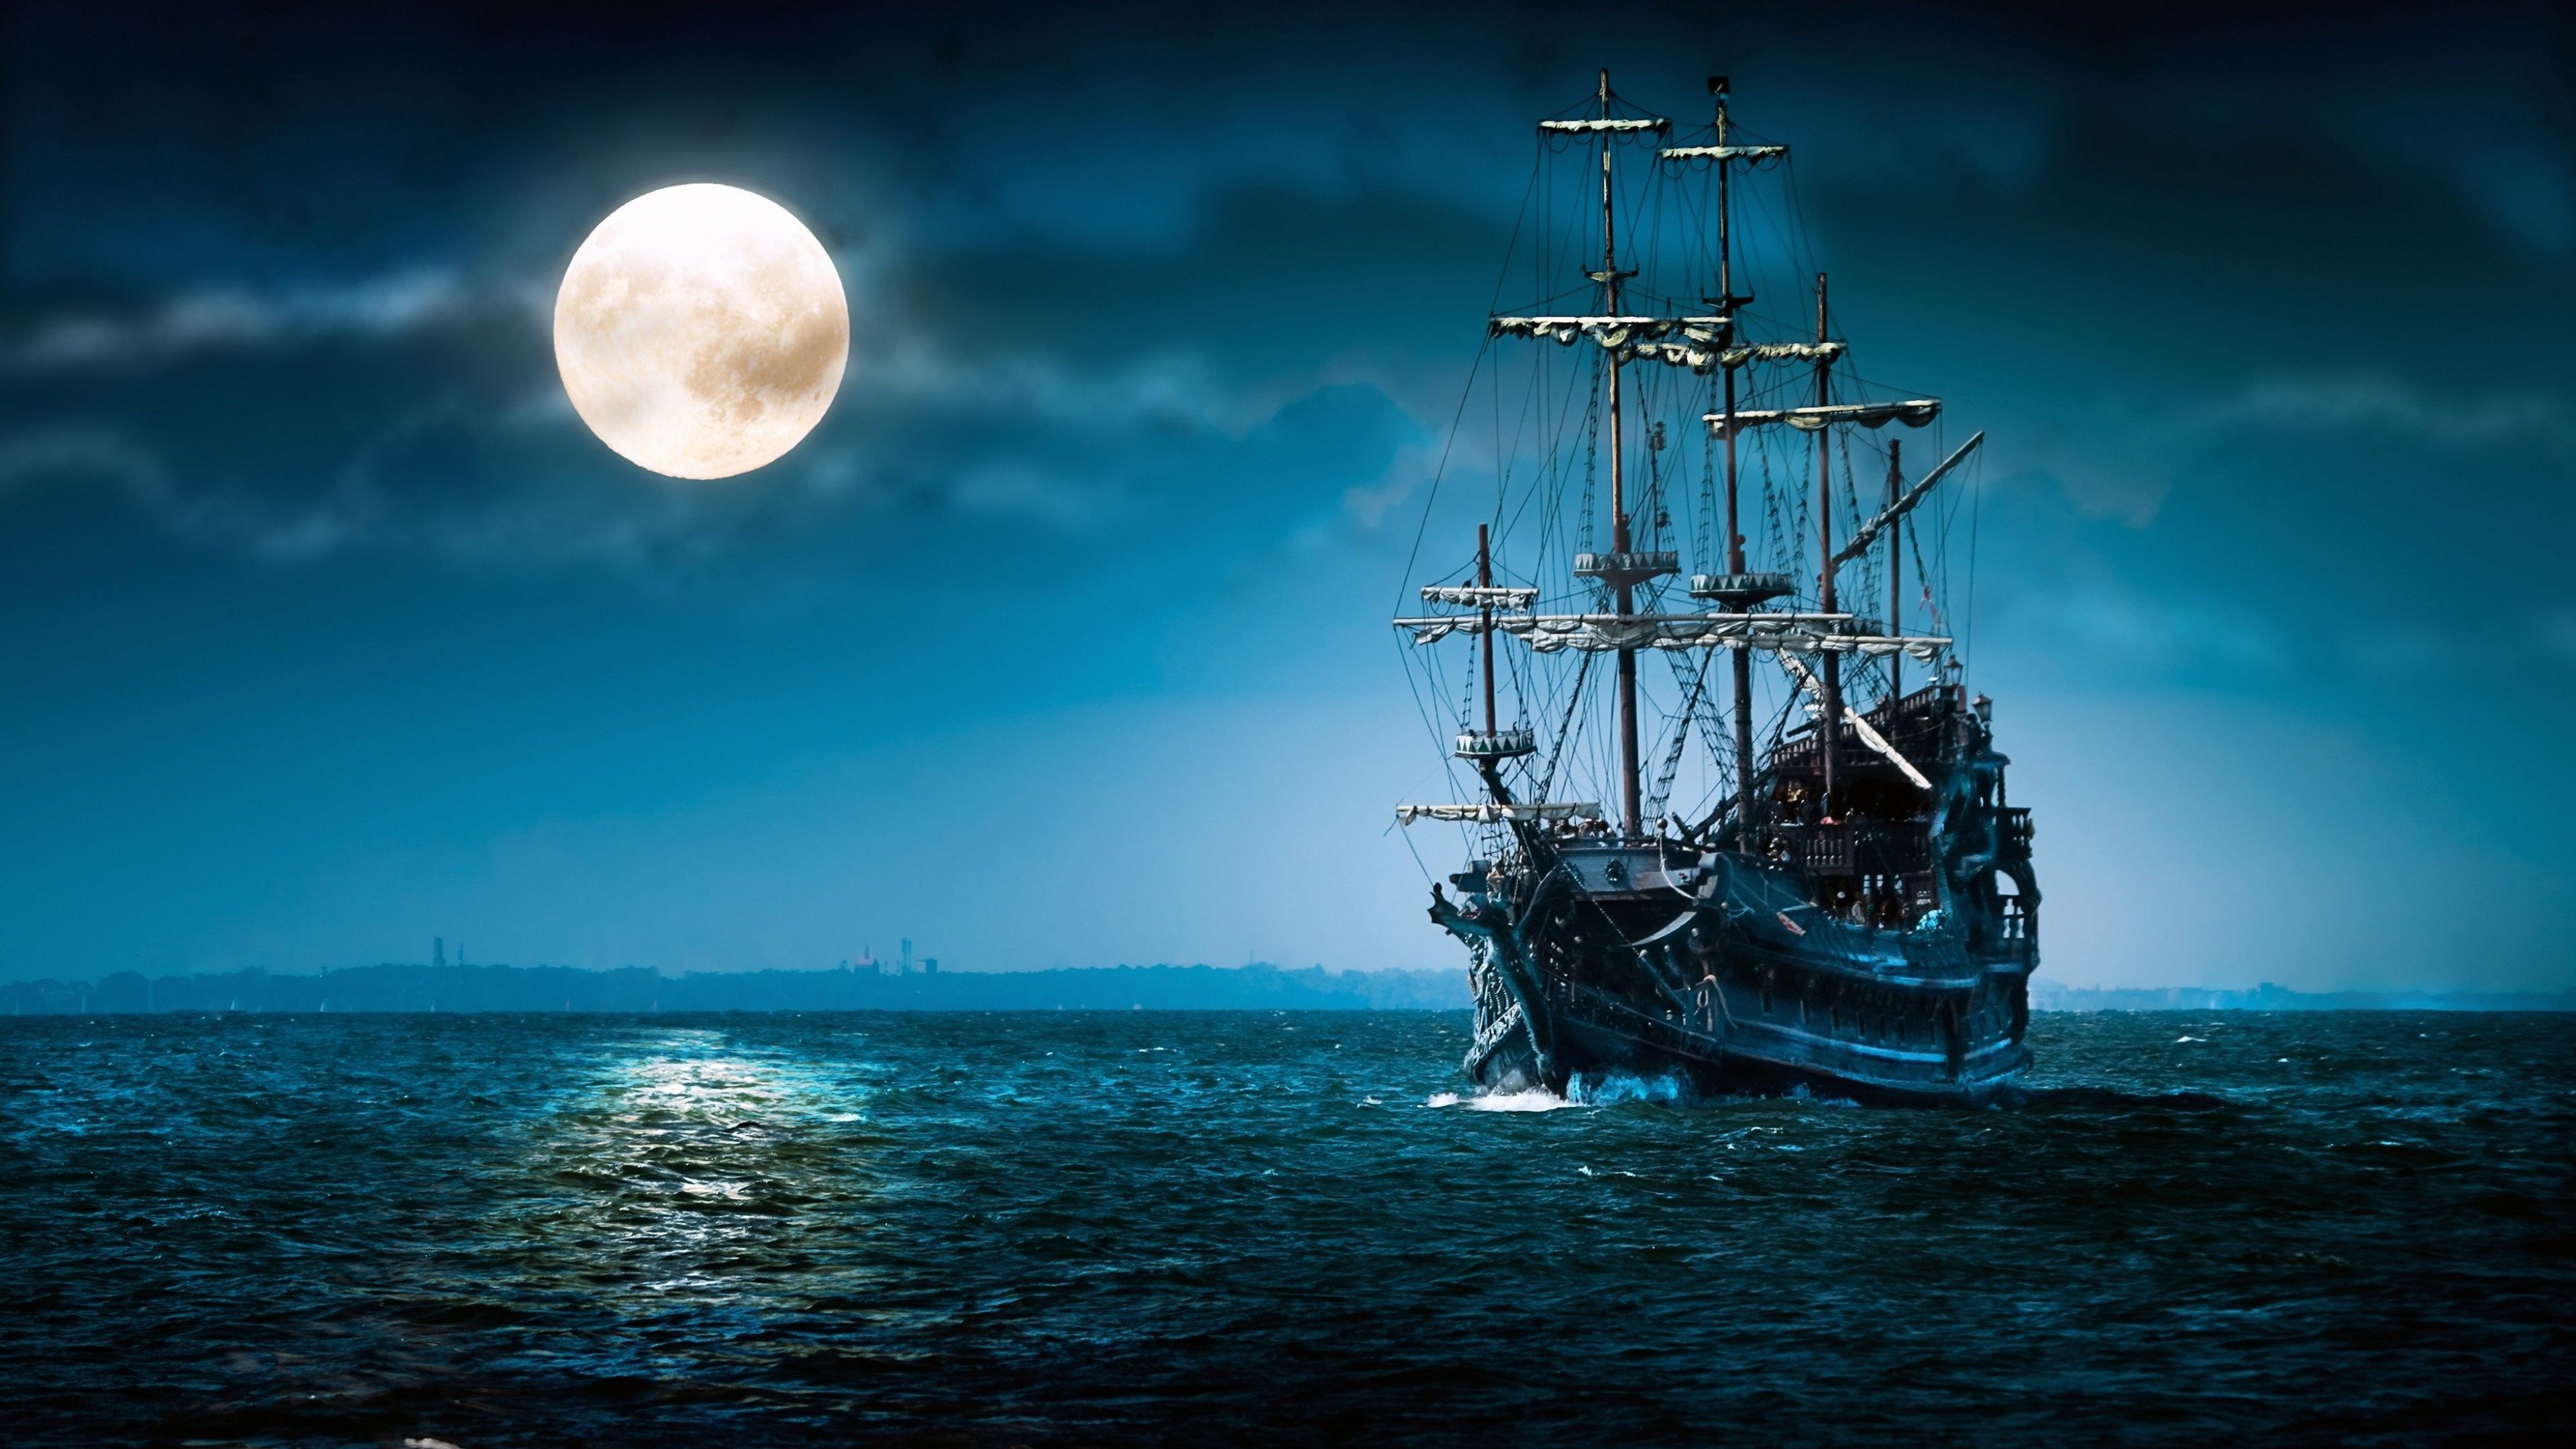 Fondos de pantalla Pirate Ship